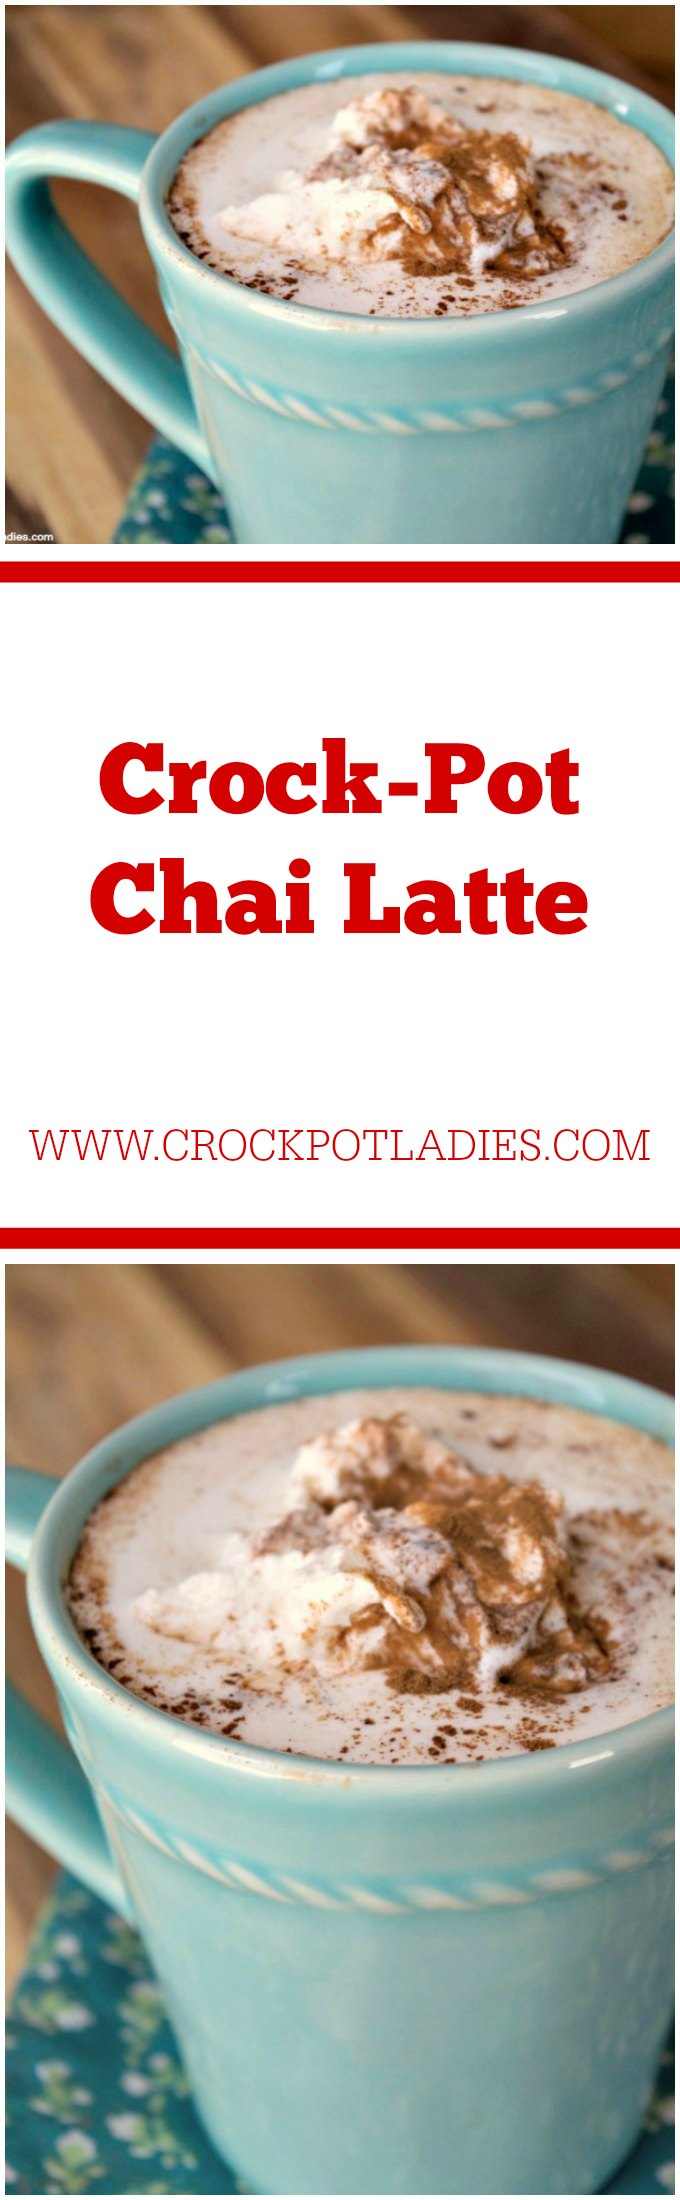 Crock-Pot Chai Latte